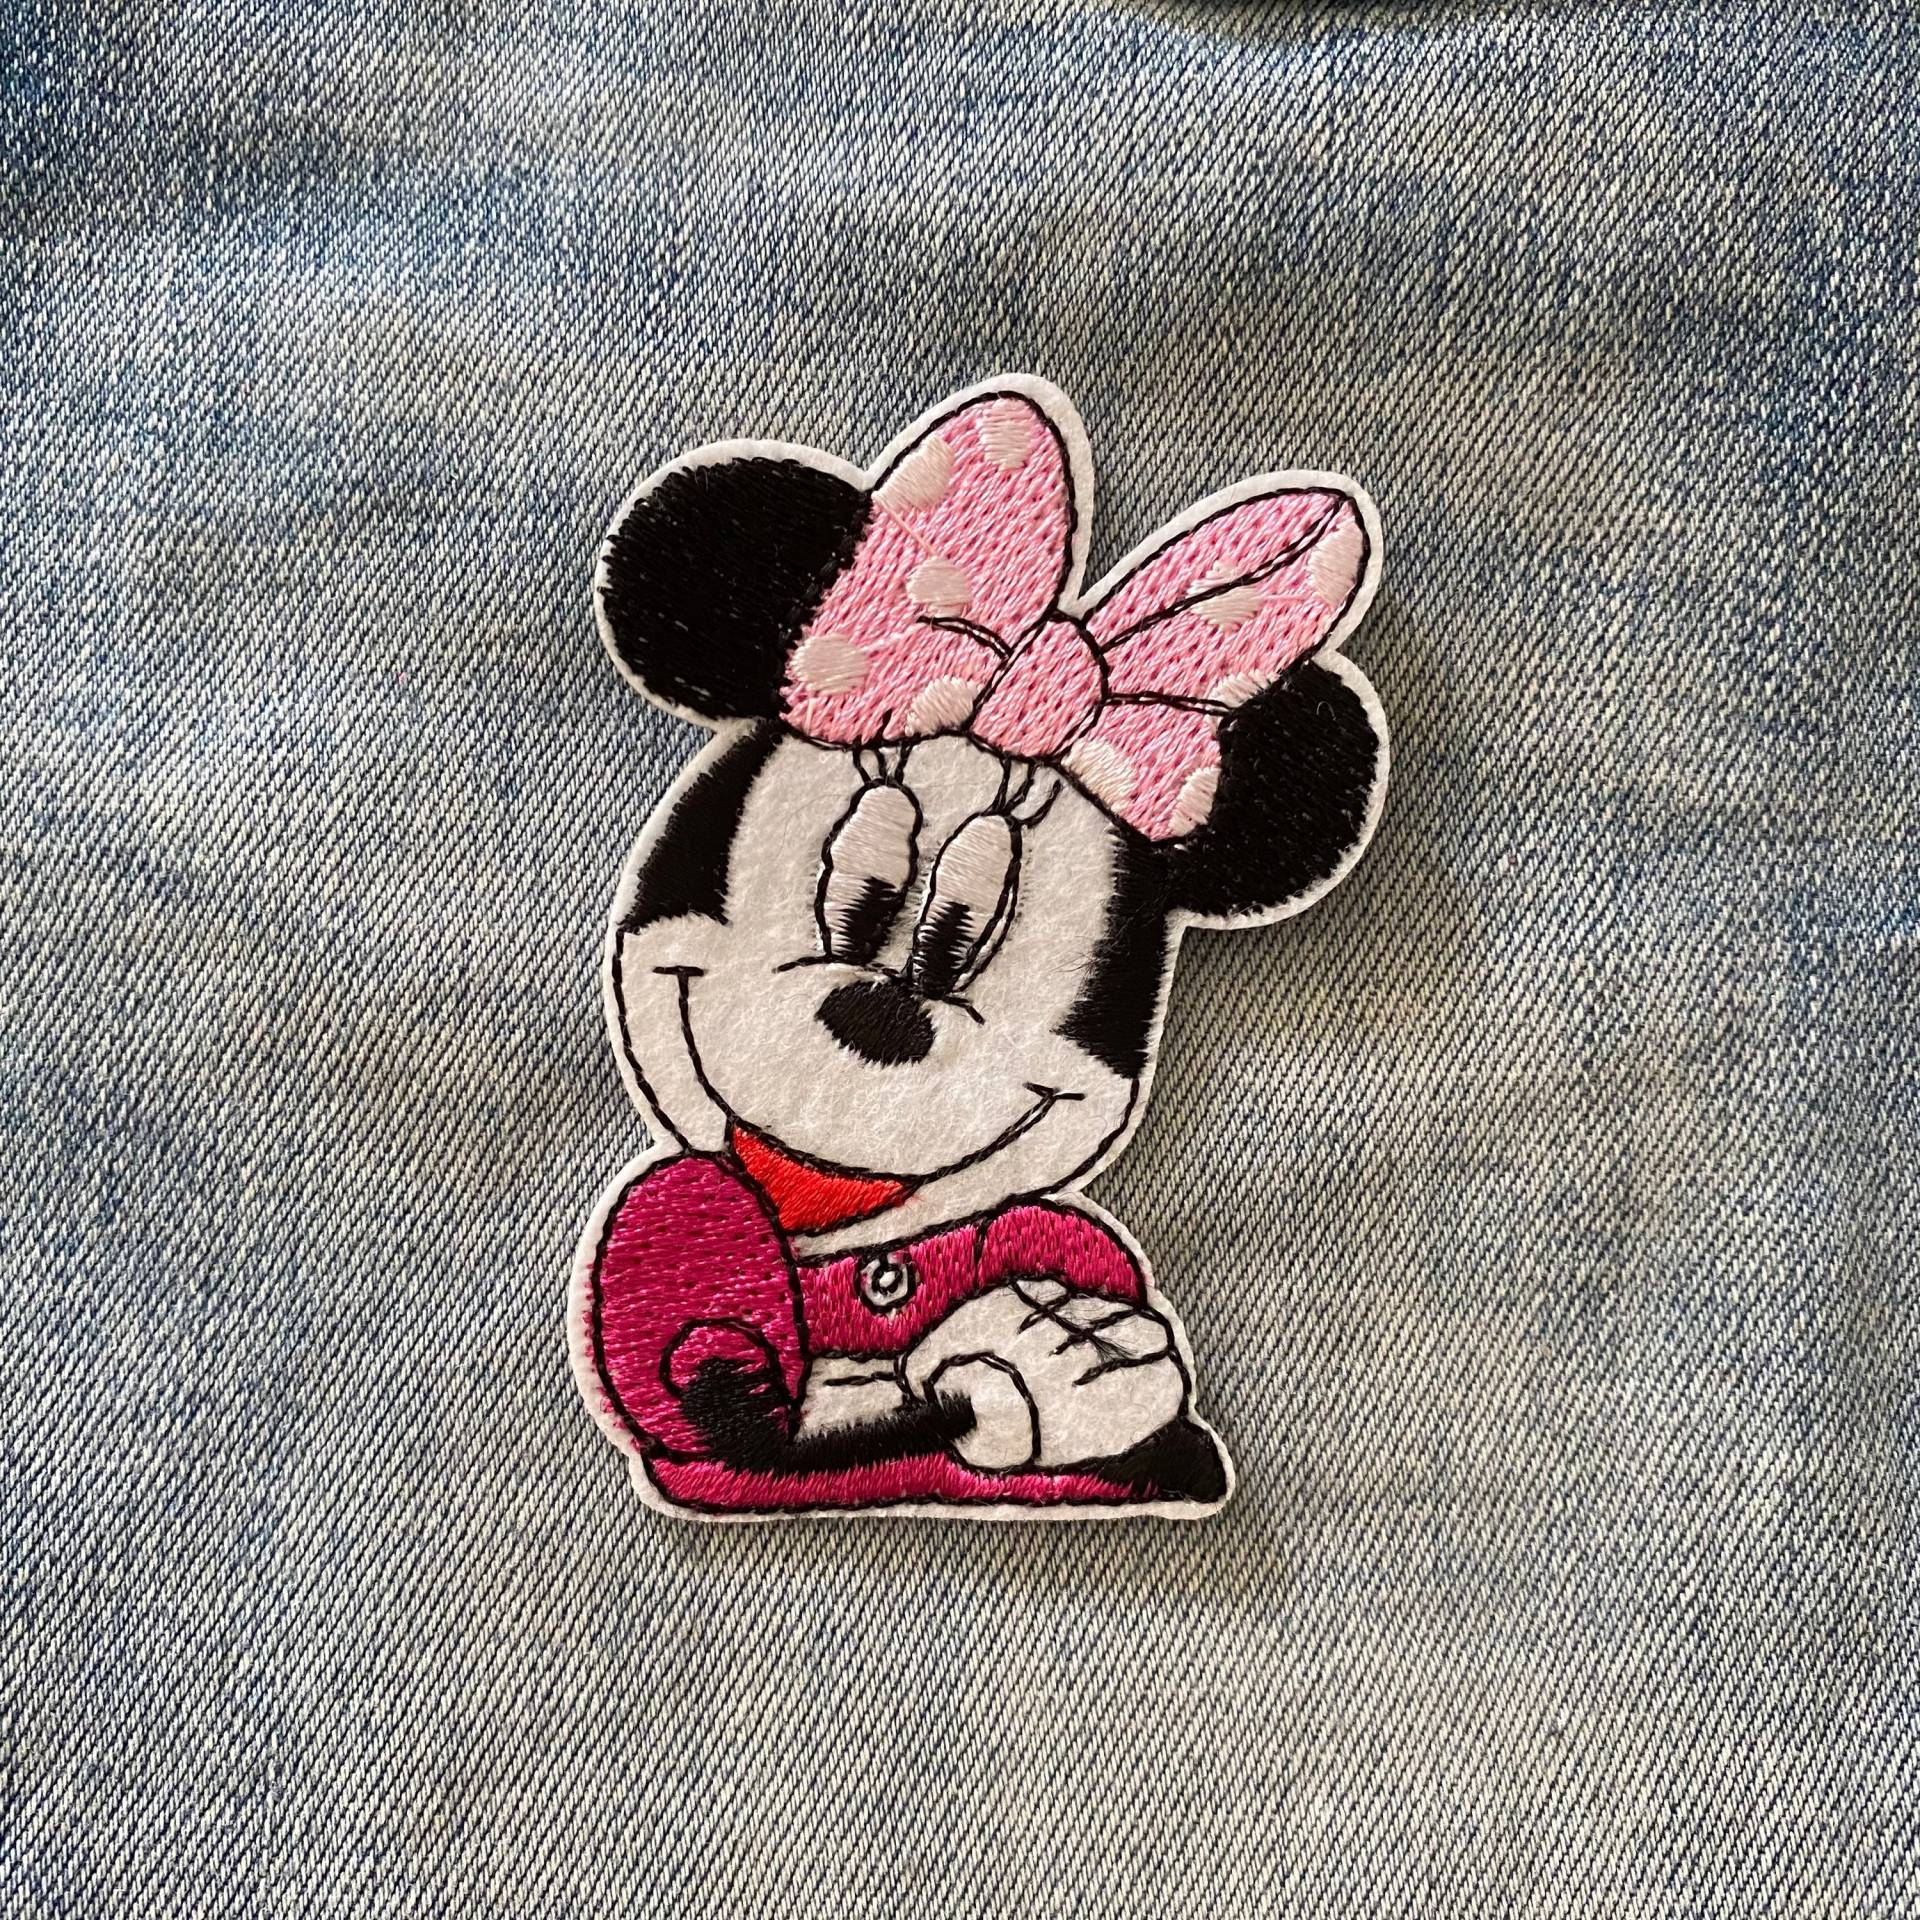 Mini Maus Aufnäher Für Jeansjacke Oder Tasche Patch, Mickey Mouse Kinder Applikation Bestickter von IronOnPatchesQLD